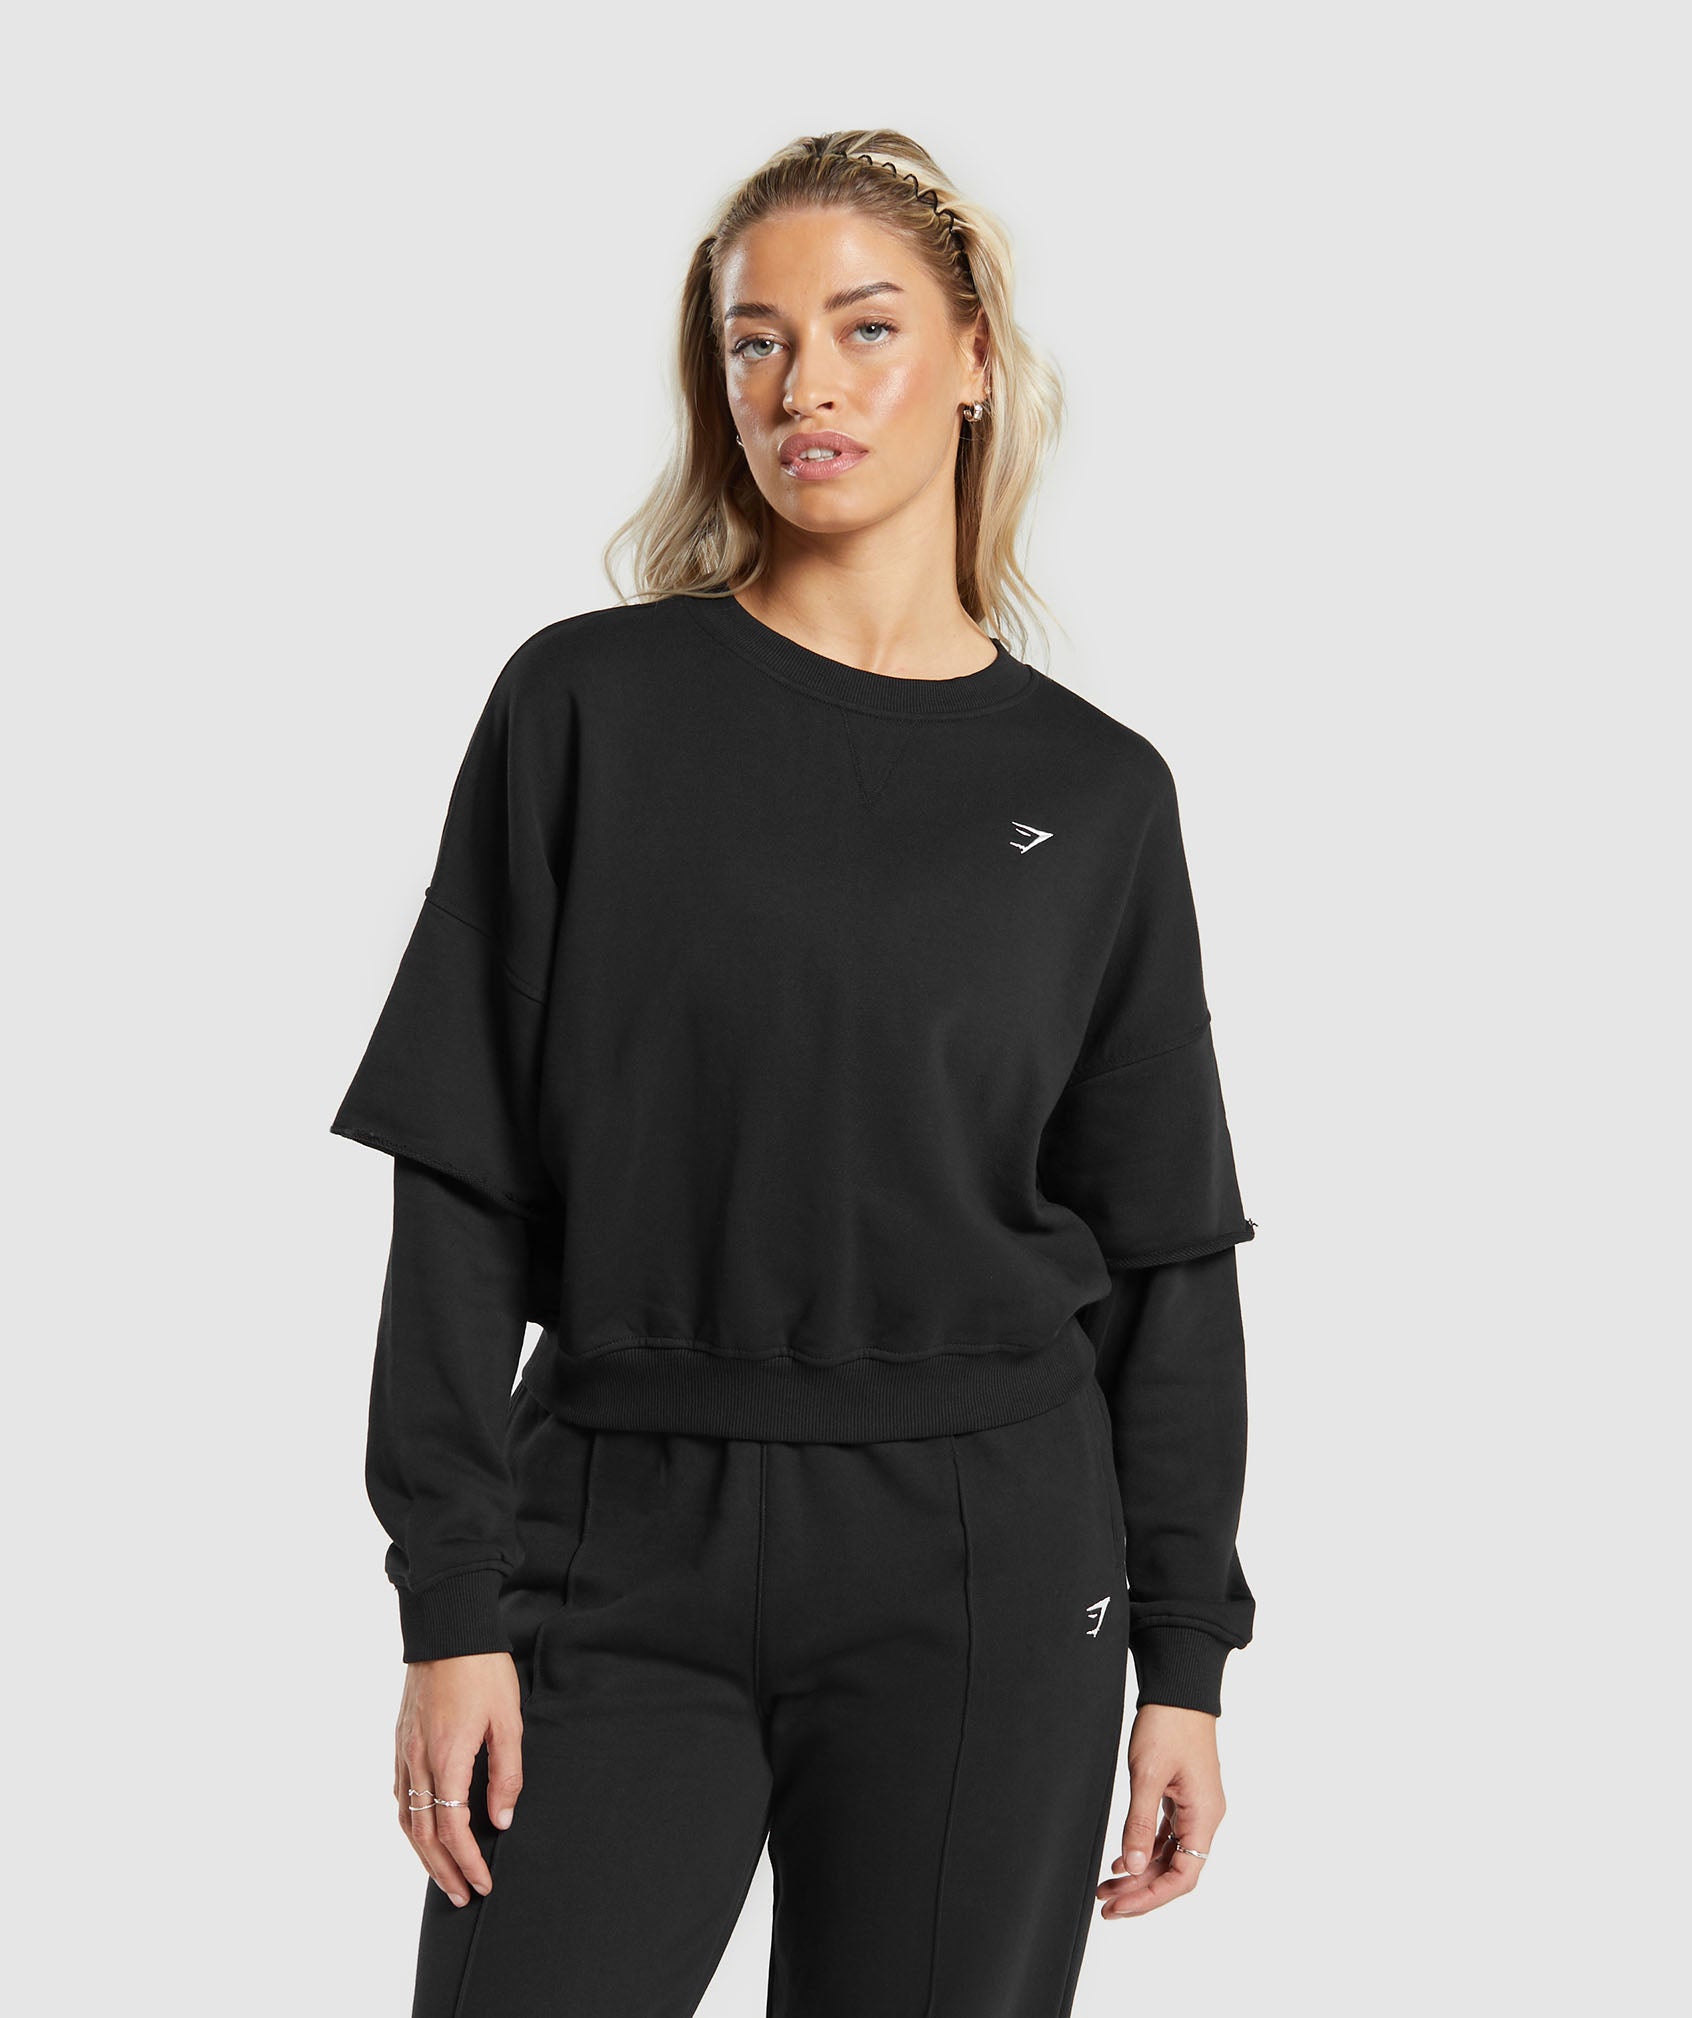 Women's Oversized Sweatshirts - Gymshark